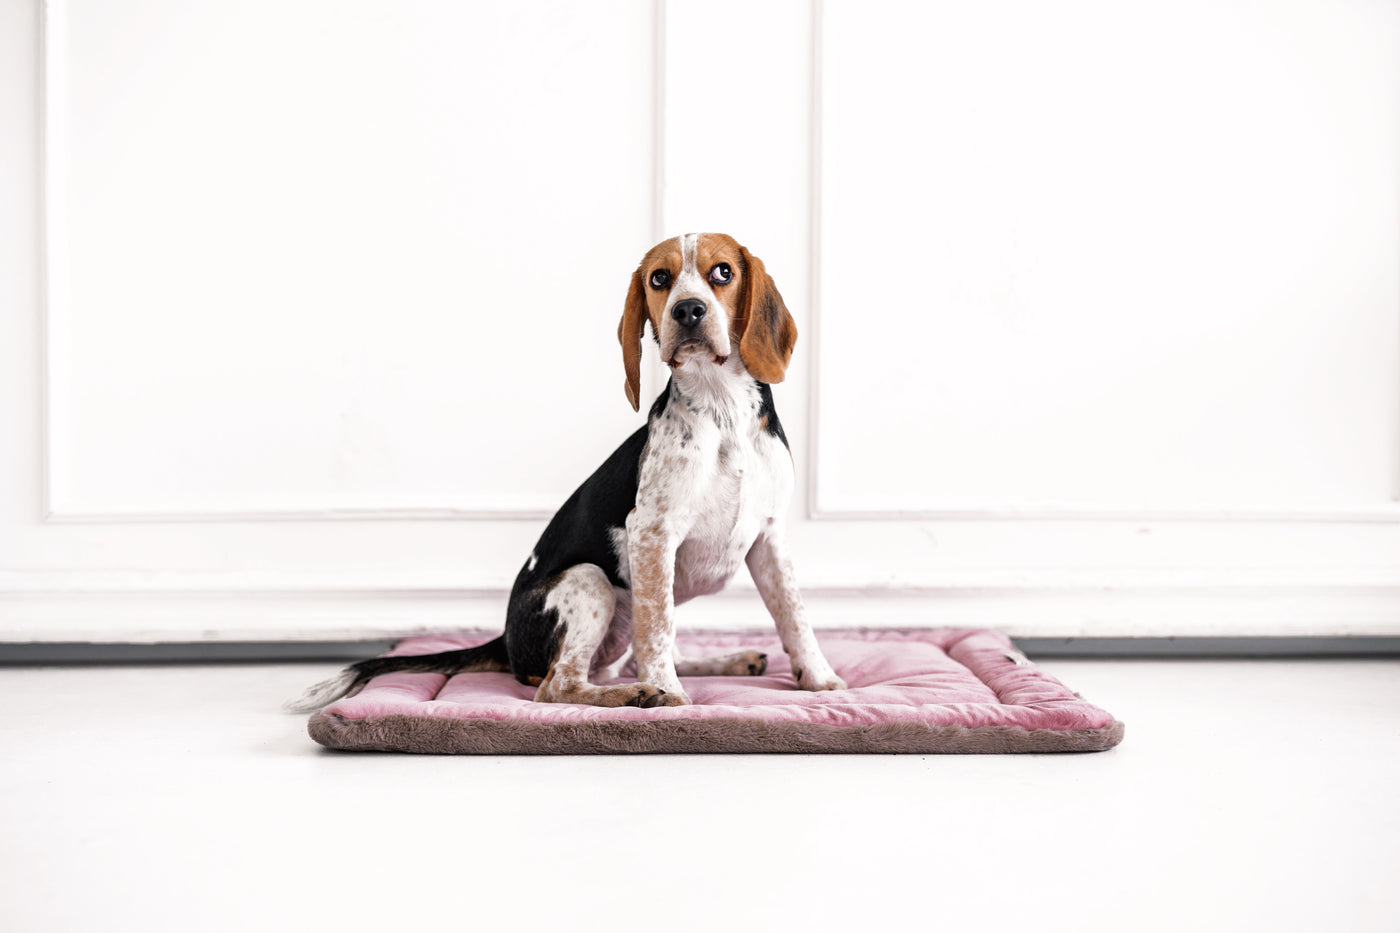 Szenebild süßer Beagle sitzt auf rosa Webpelz Hundekissen mit weisser Stuckwand als Hintergrund.